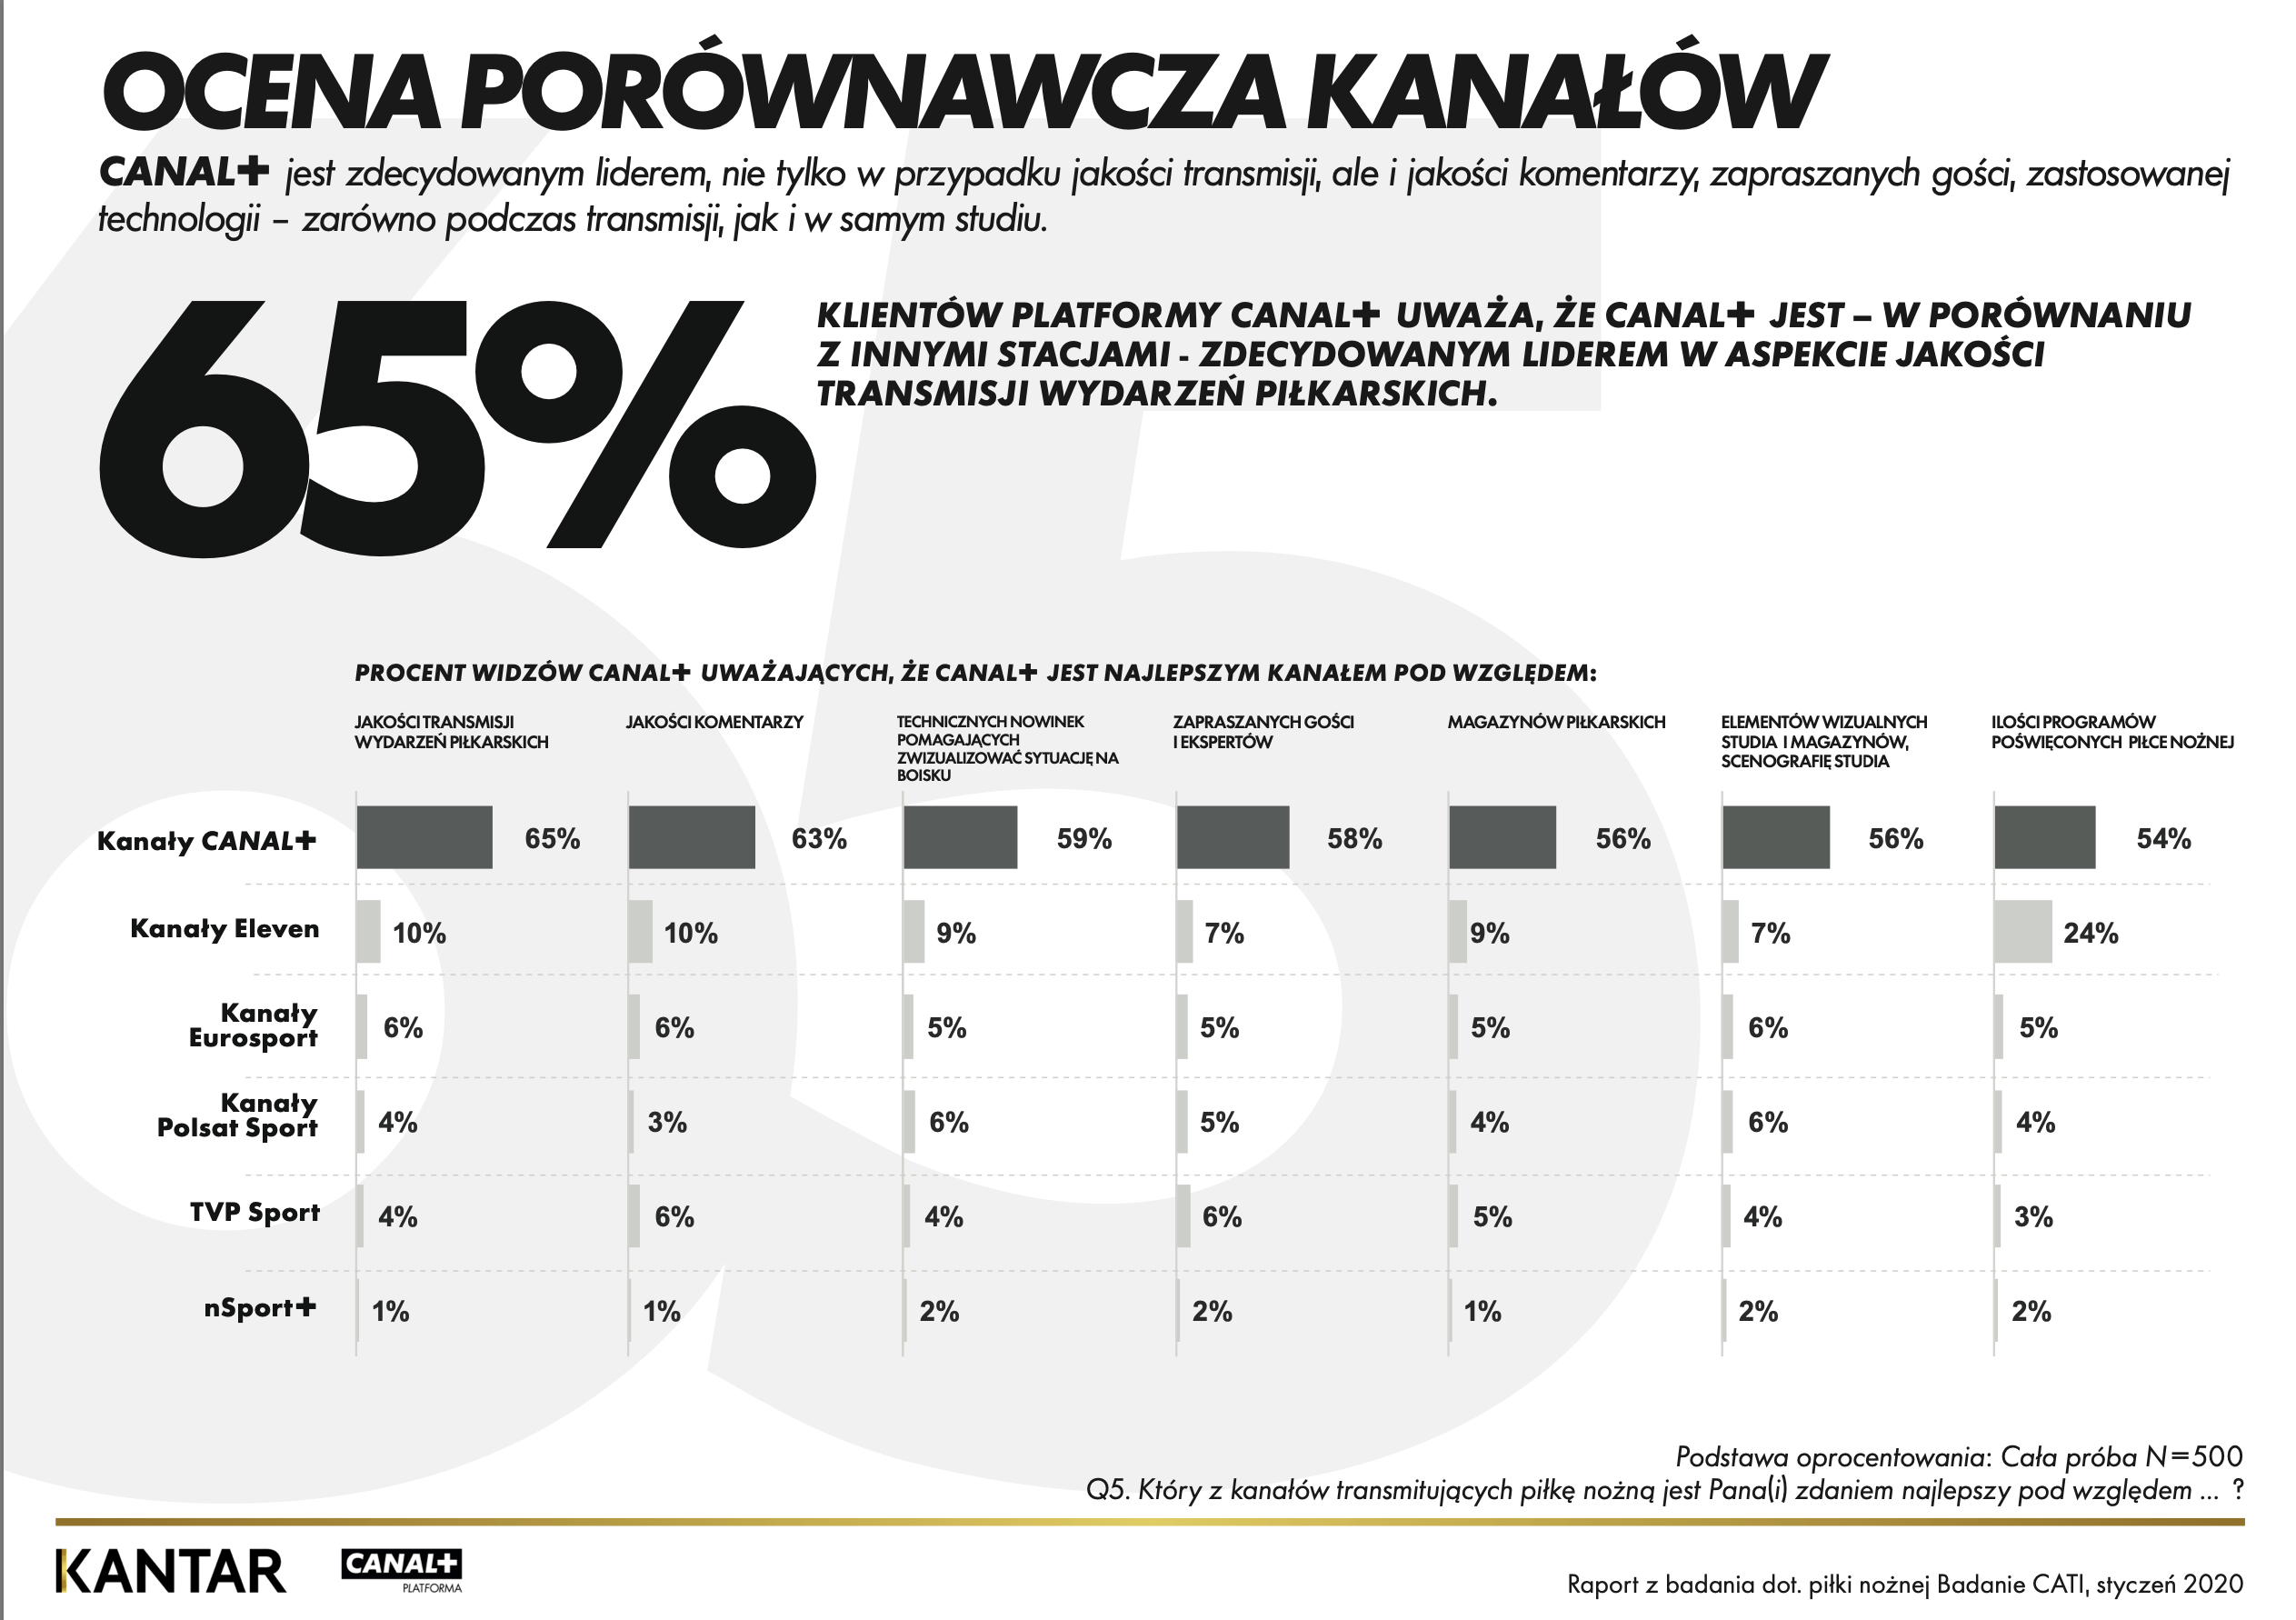 Ocena porównawcza kanałów sportowych w Polsce (2020)